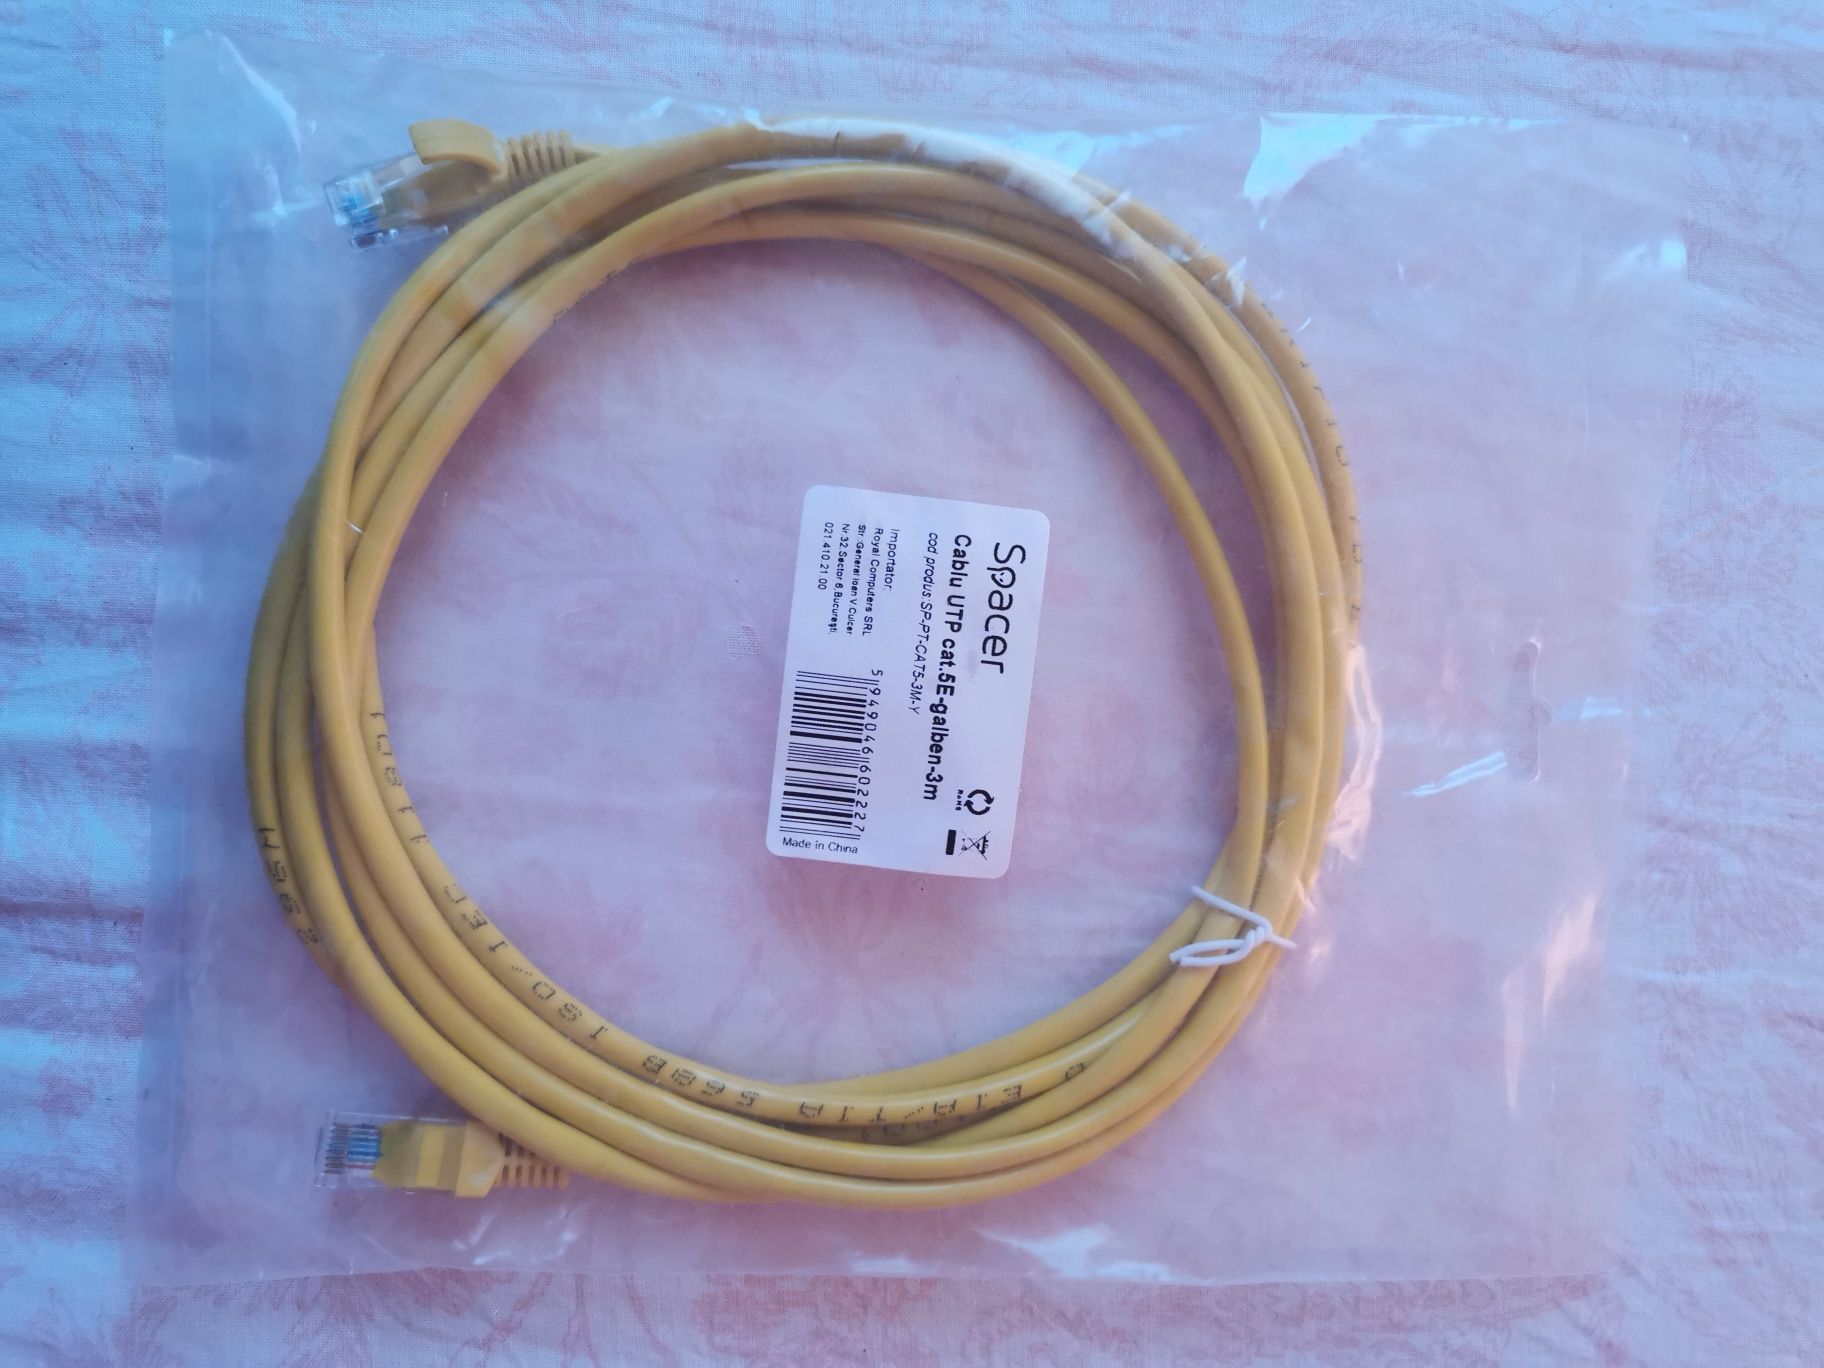 HP usb-c rj45 adapter + cablu UTP 3m